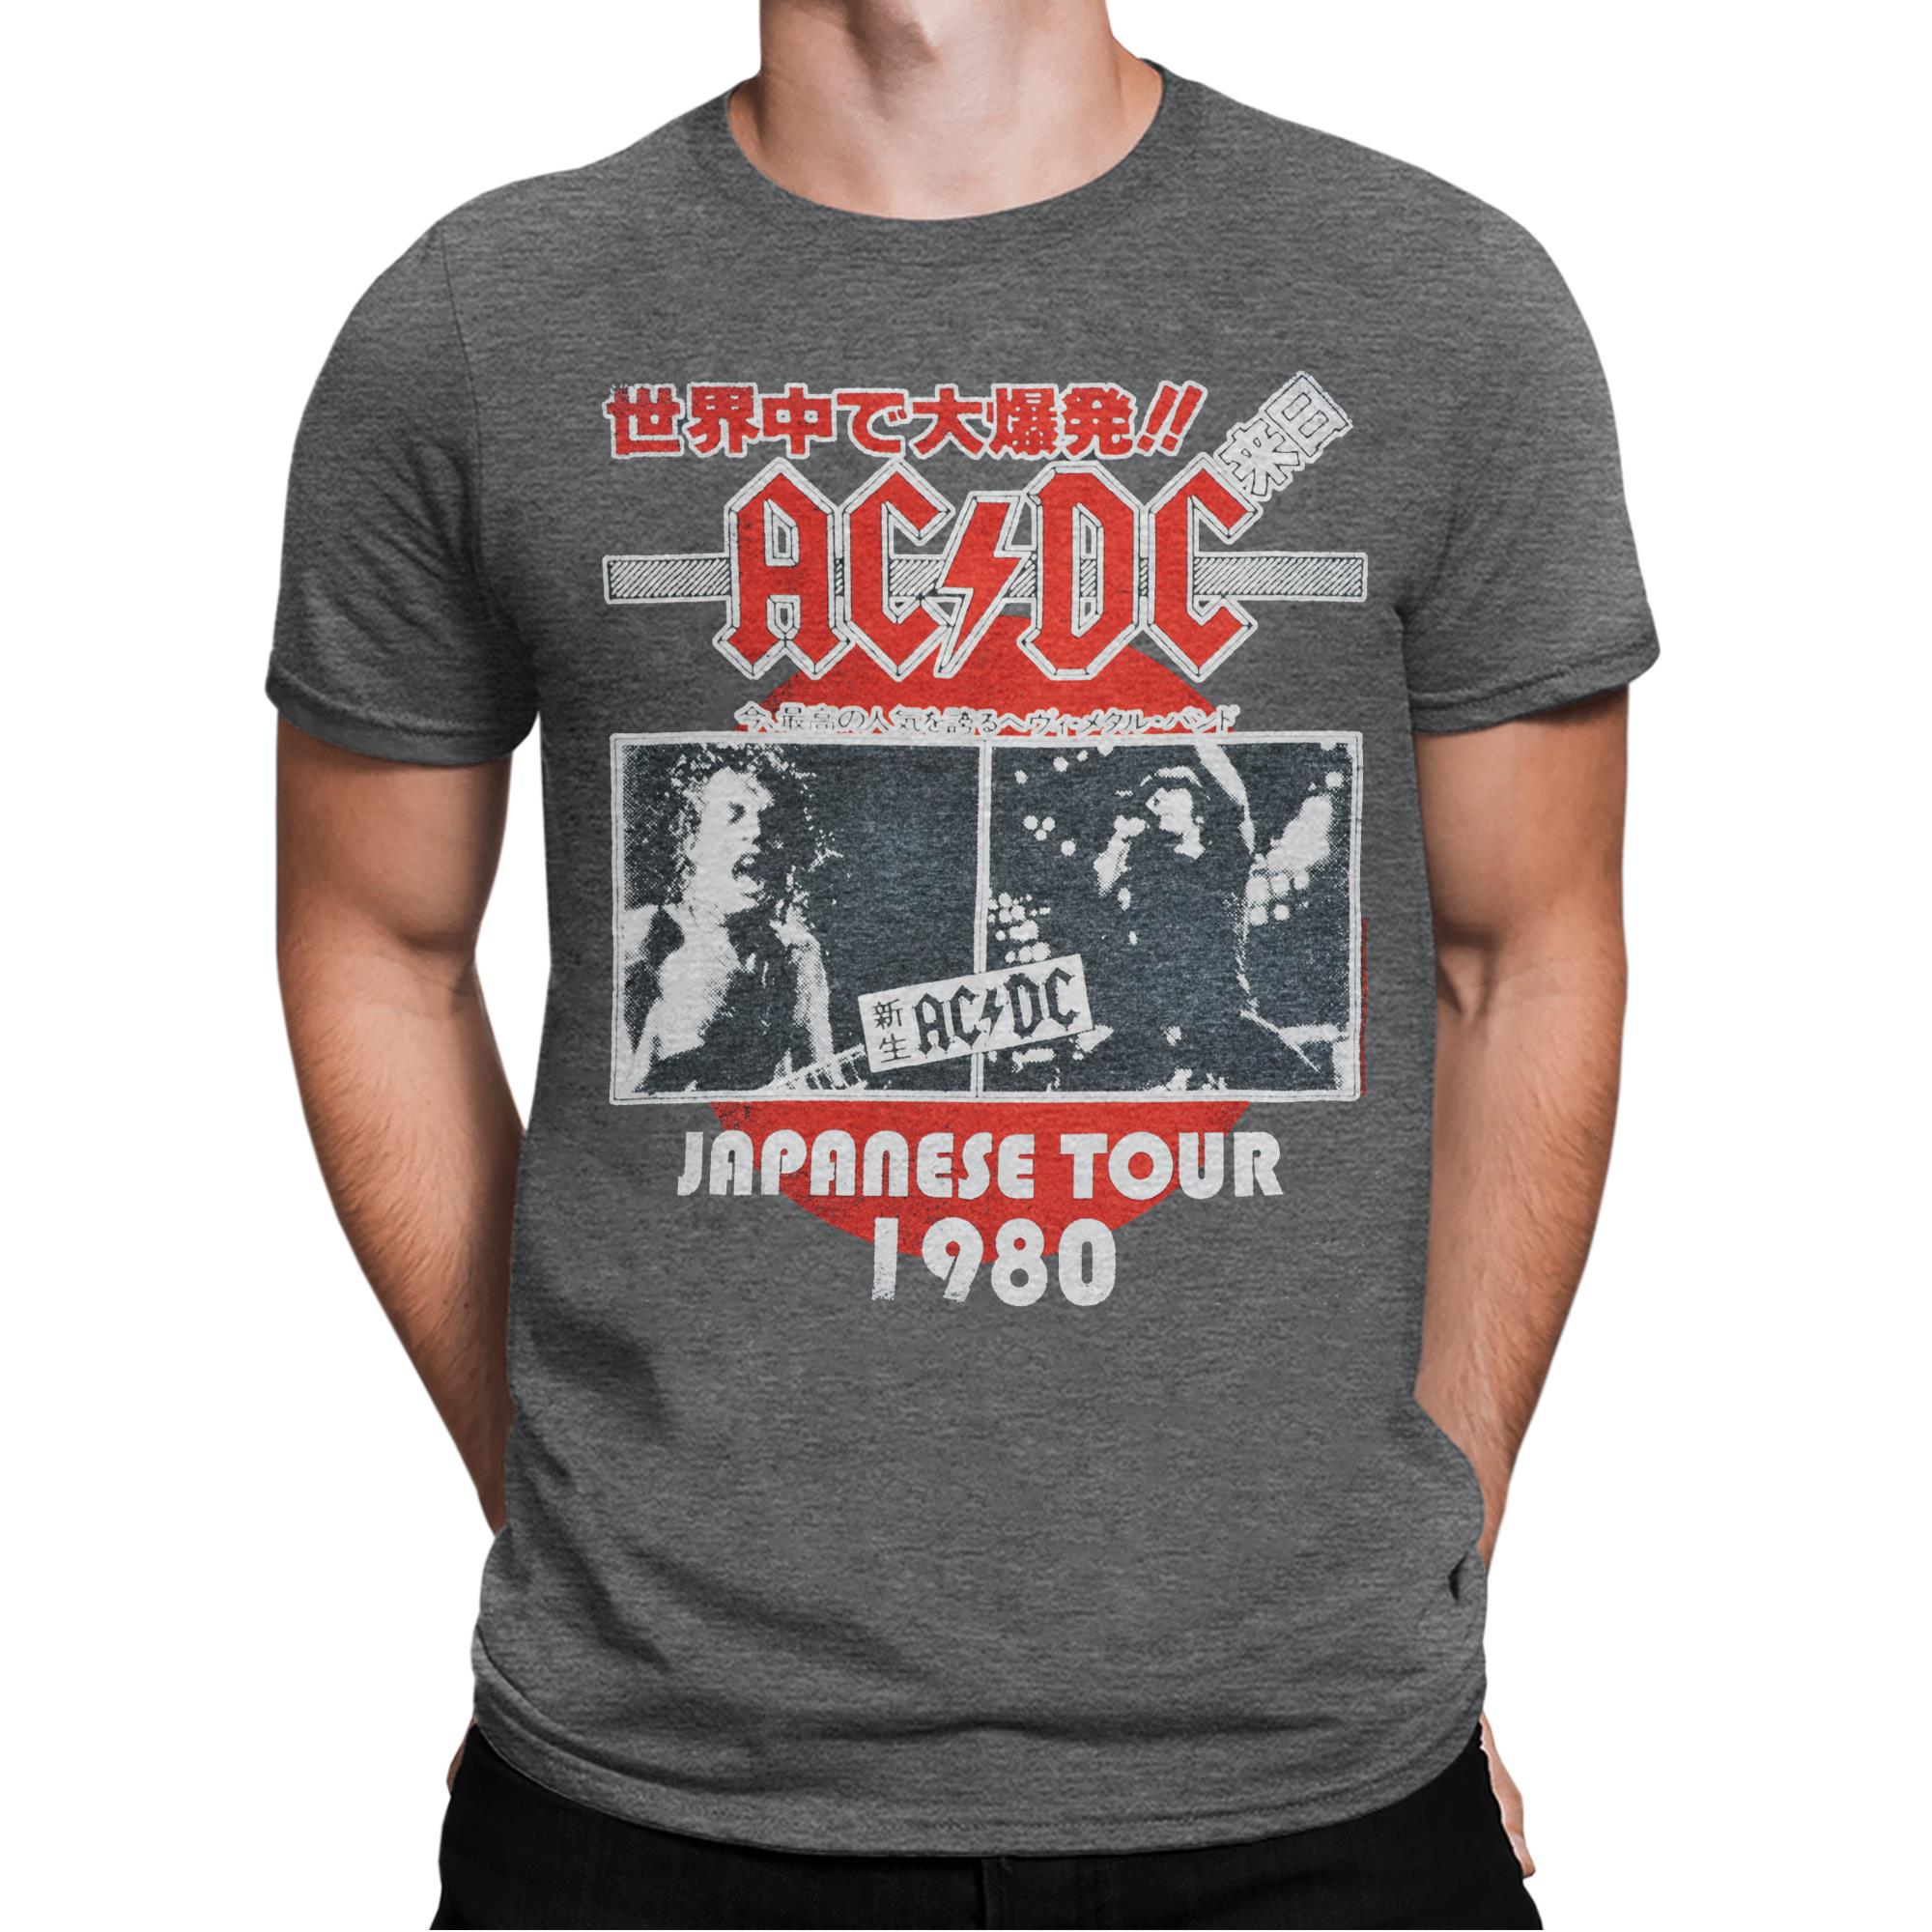 Japanese Tour 1980 T-Shirt